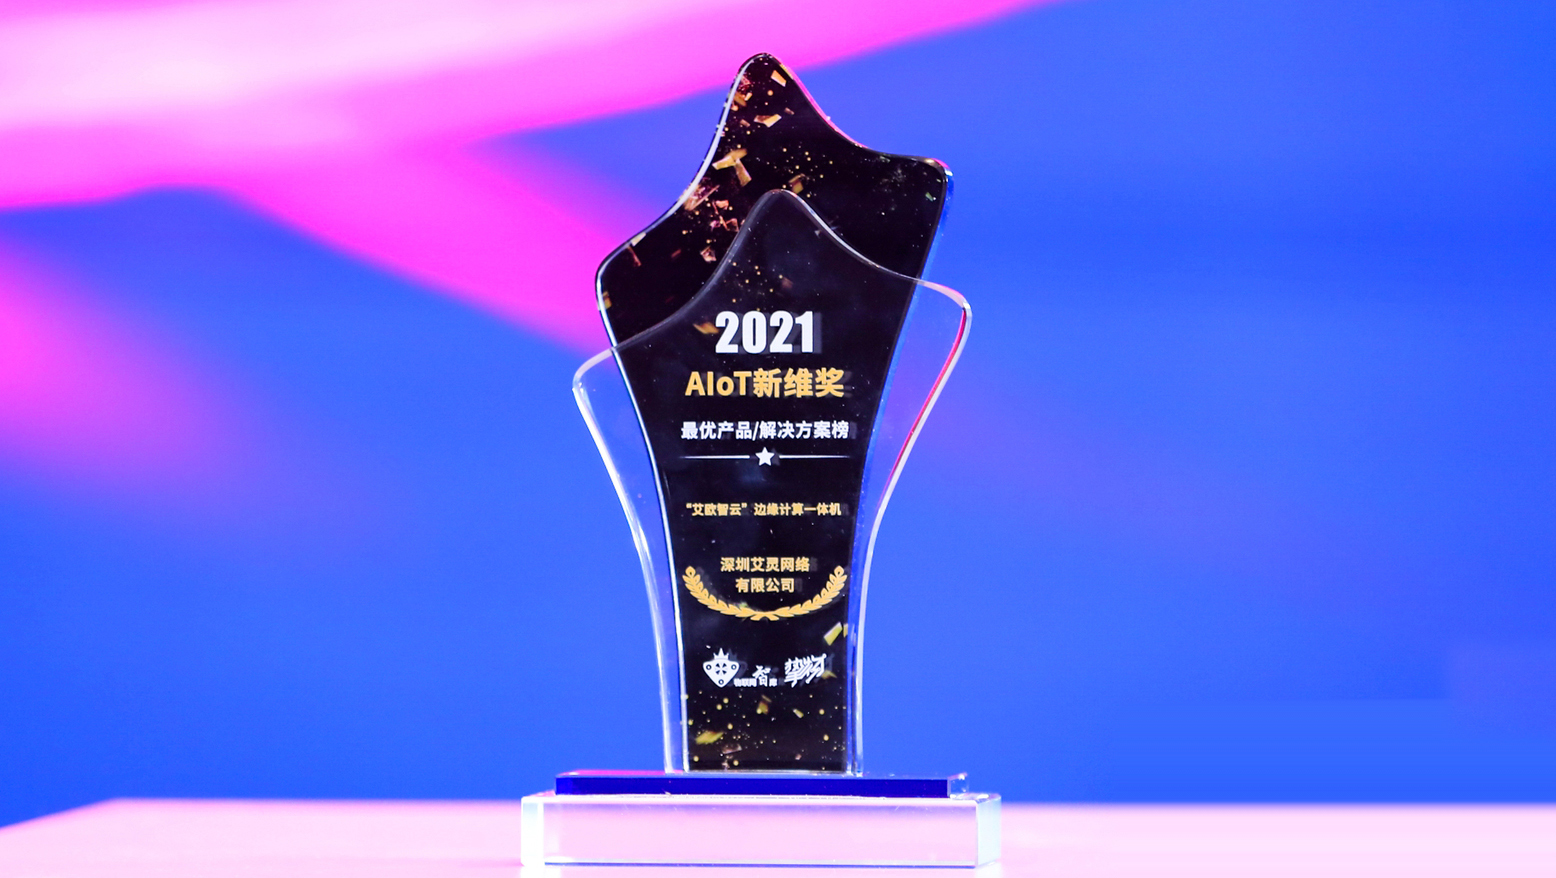 艾欧智云荣膺2021 AIoT新维奖最优产品/解决方案